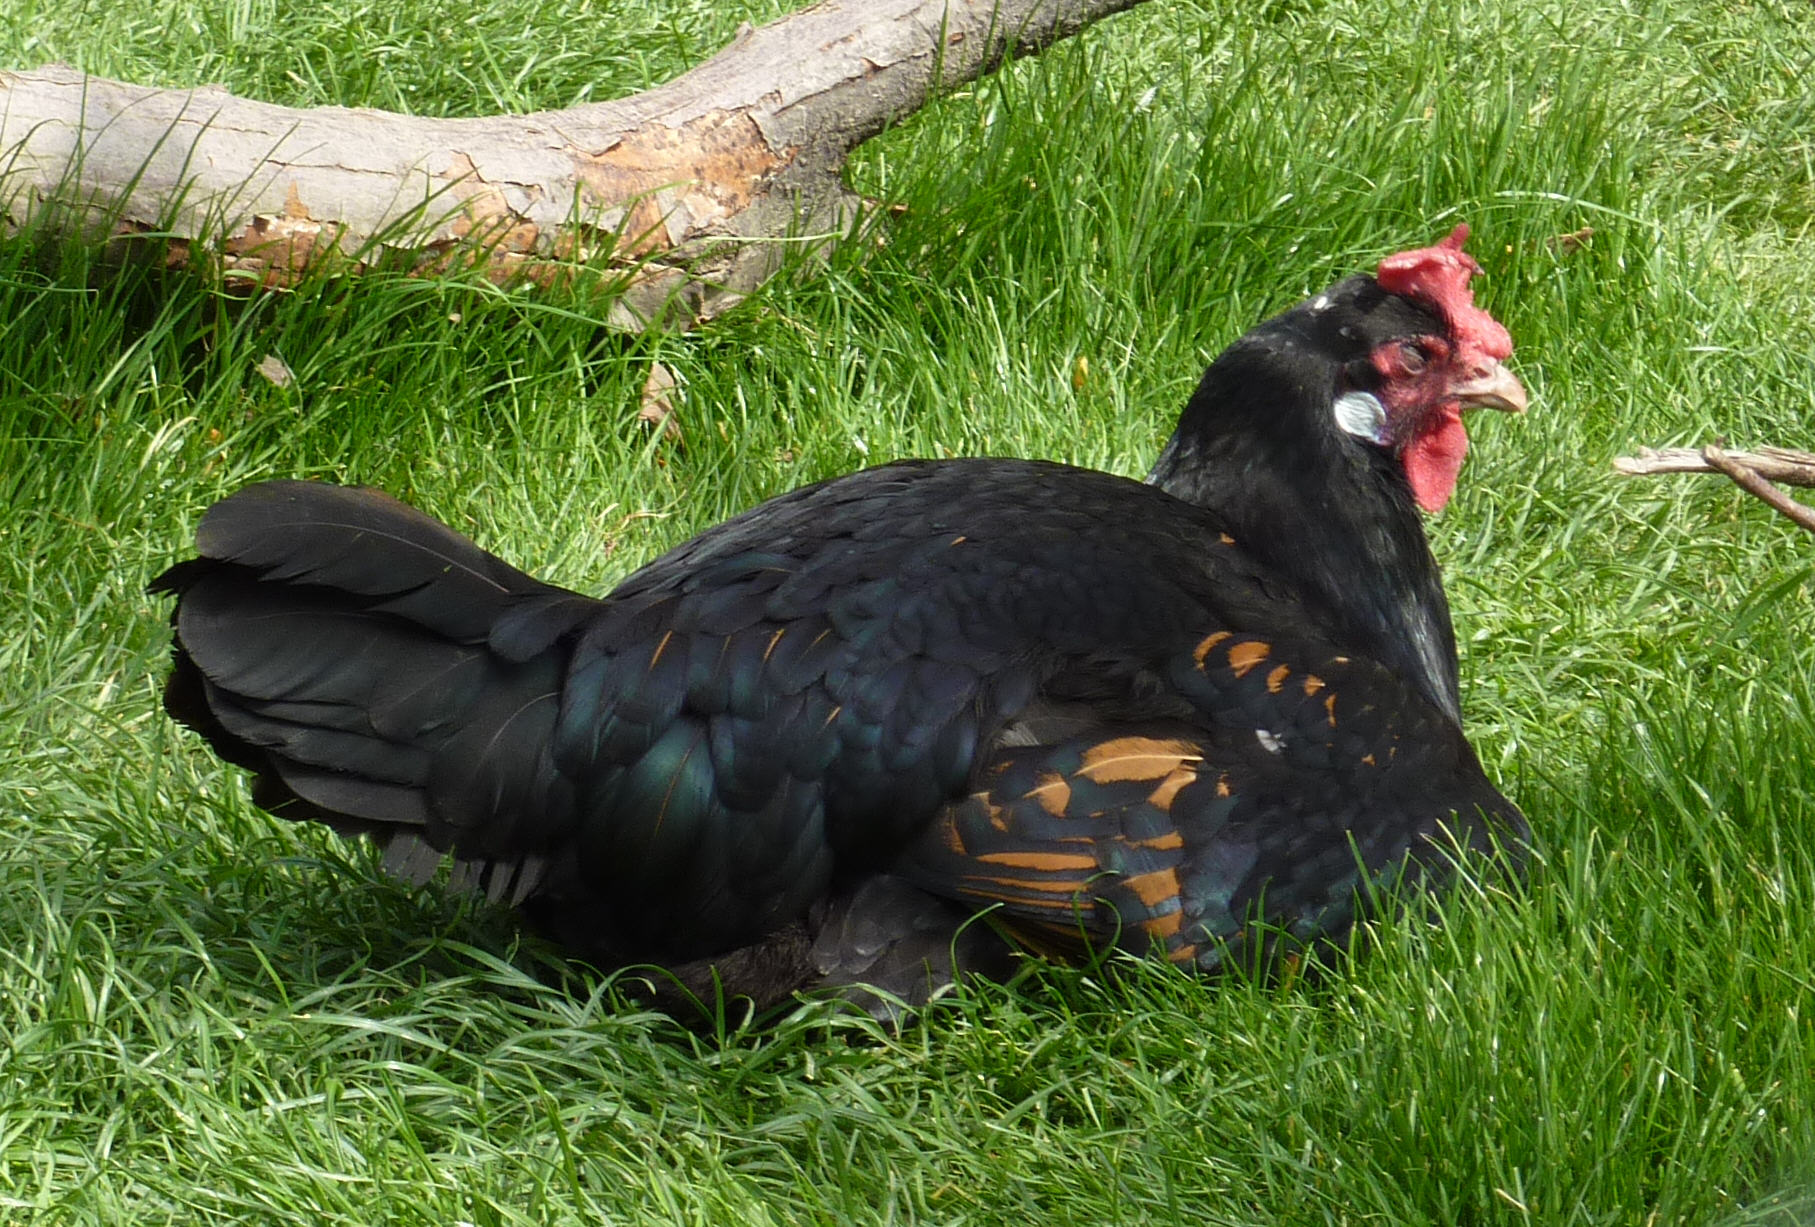 Бергская голосистая порода кур – описание с фото и видео